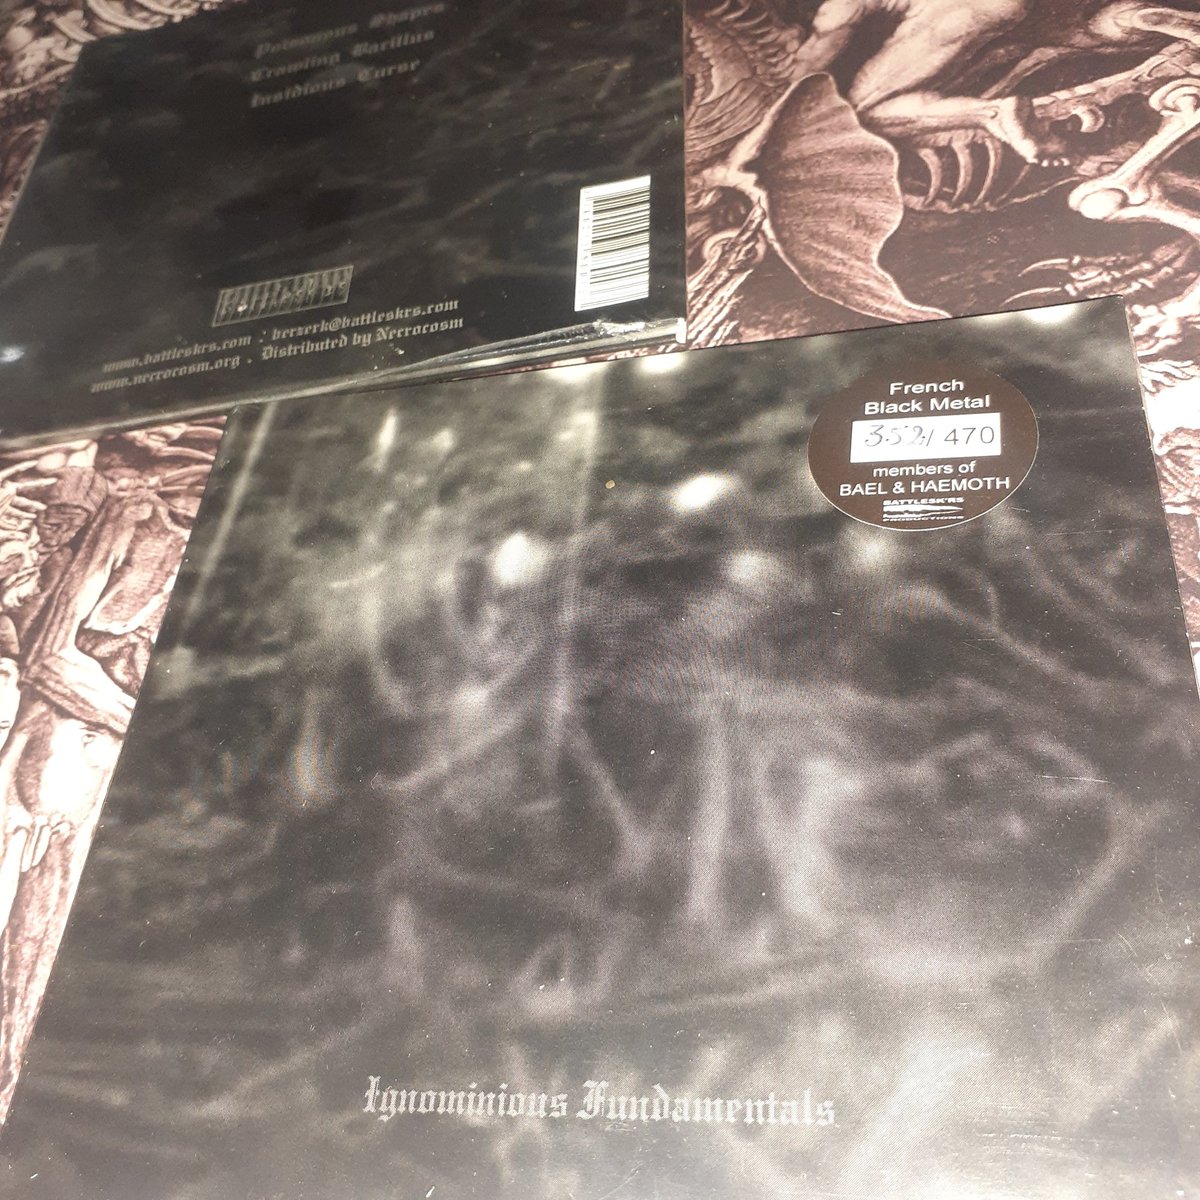 Banda: Dark Opus (França)
Álbum: Ignominions Fundamentals
Formato: CD Digifile numerado a mão e limitado em 470 cópias 
Valor: 50,00 R$ + Frete

#darkopus #frenchblackmetal #blackmetal #vdmorte #blackmetalfrance #oldschoollabel #rawblackmetal   #frenchblackmetal #franceblackmetal